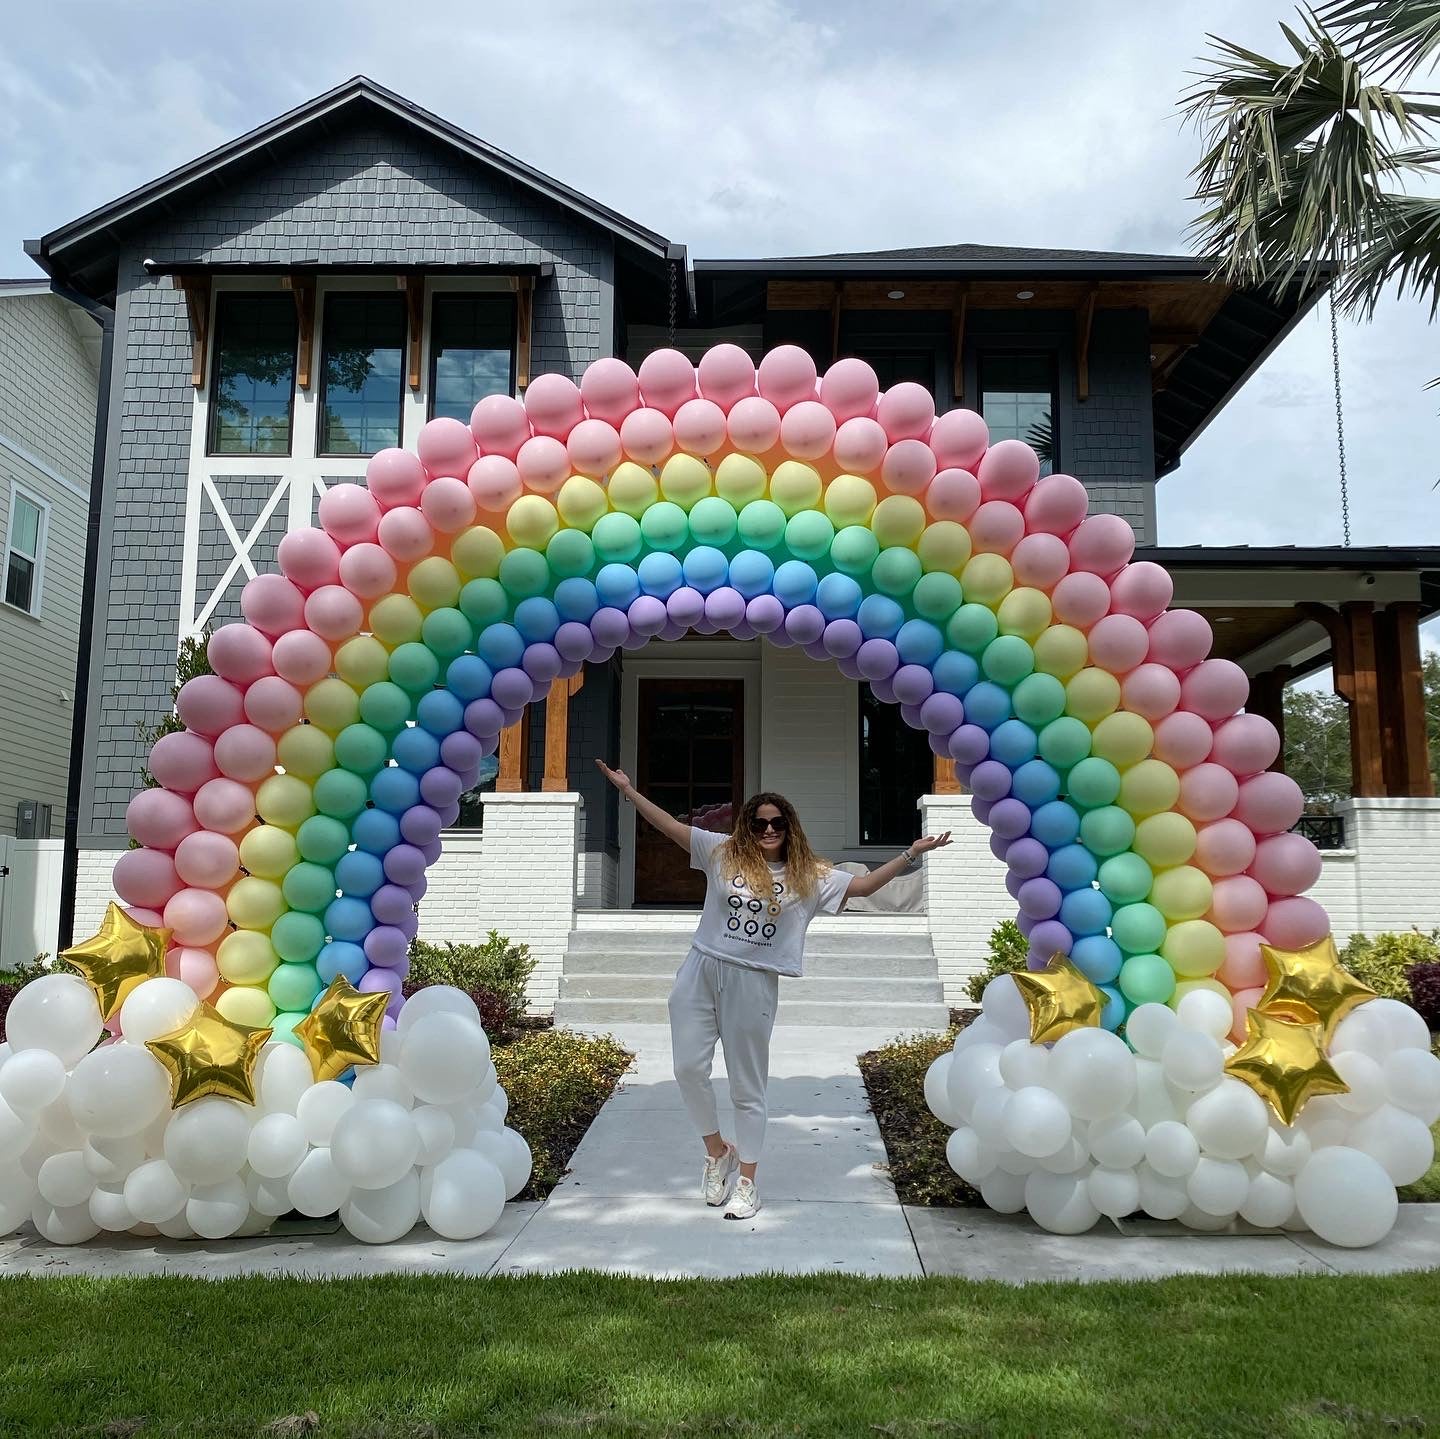 Rainbow Balloon Arch - The Blue House